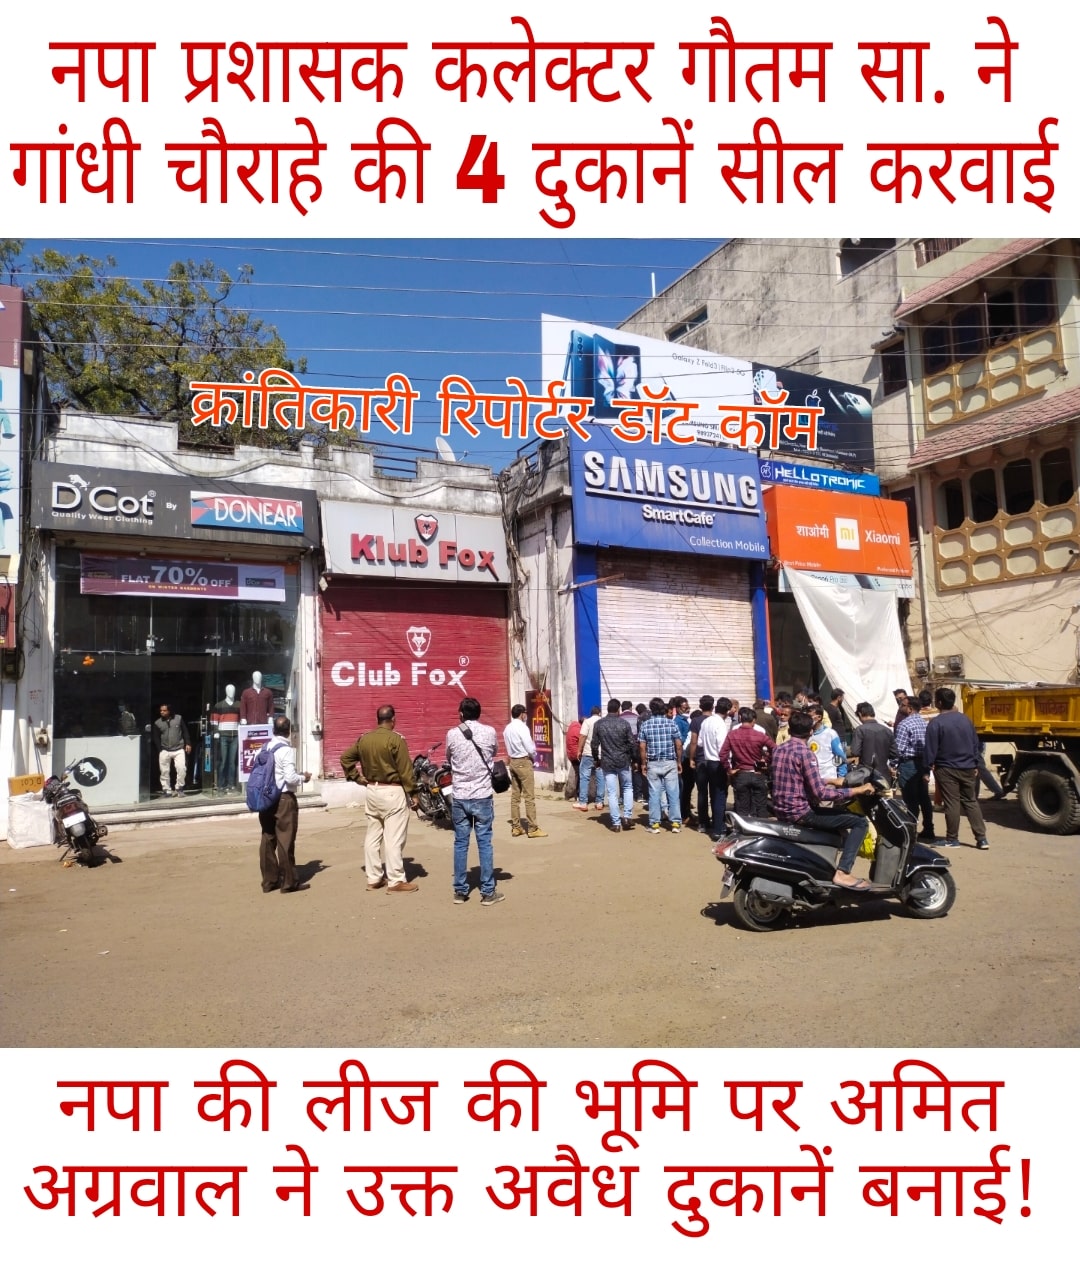 #गांधी चौराहे की 4 करोड़ की 4 दुकानें सील हुई... नपा प्रशासक कलेक्टर गौतम सा. की बड़ी कार्यवाही...।